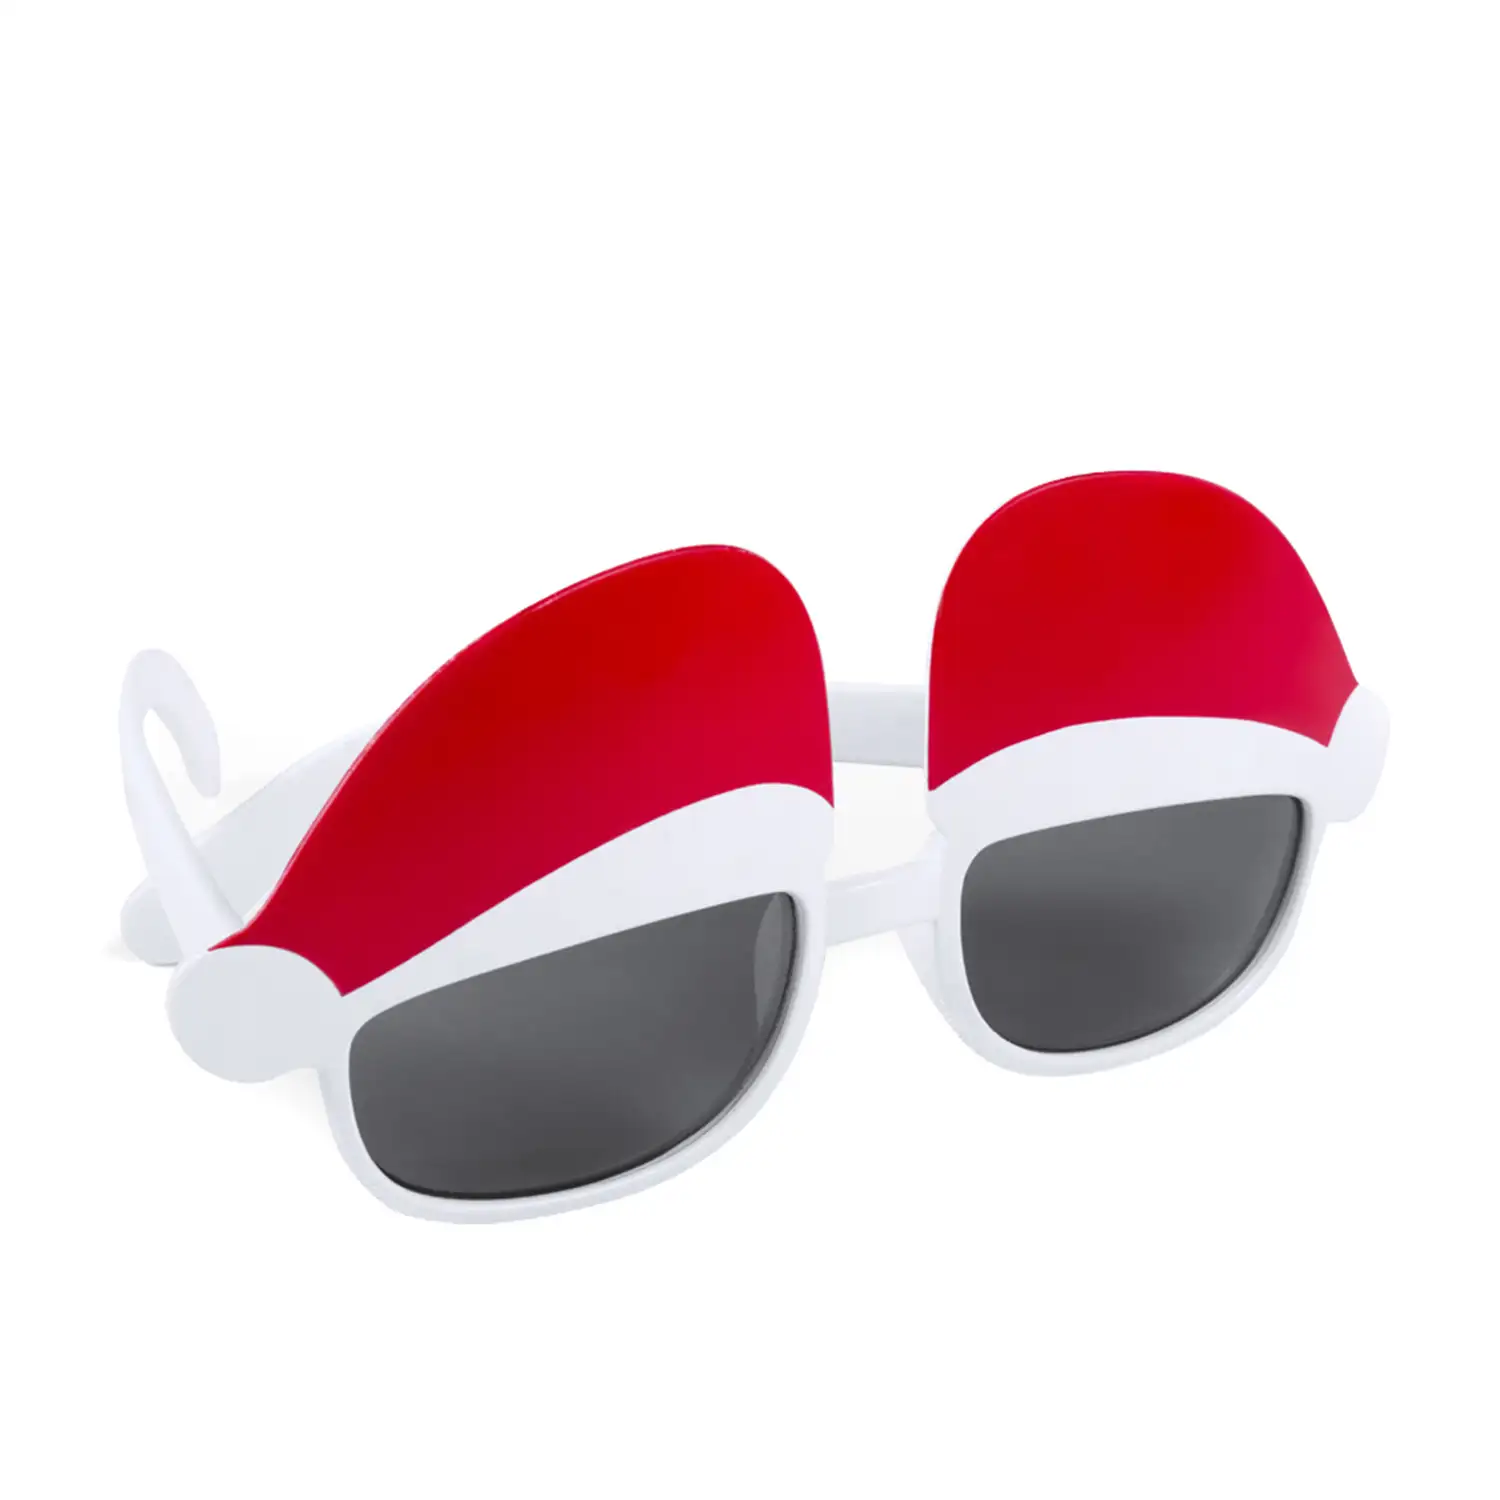 HUNTIX Originales gafas con protección UV400 y diseño Papá Noel.